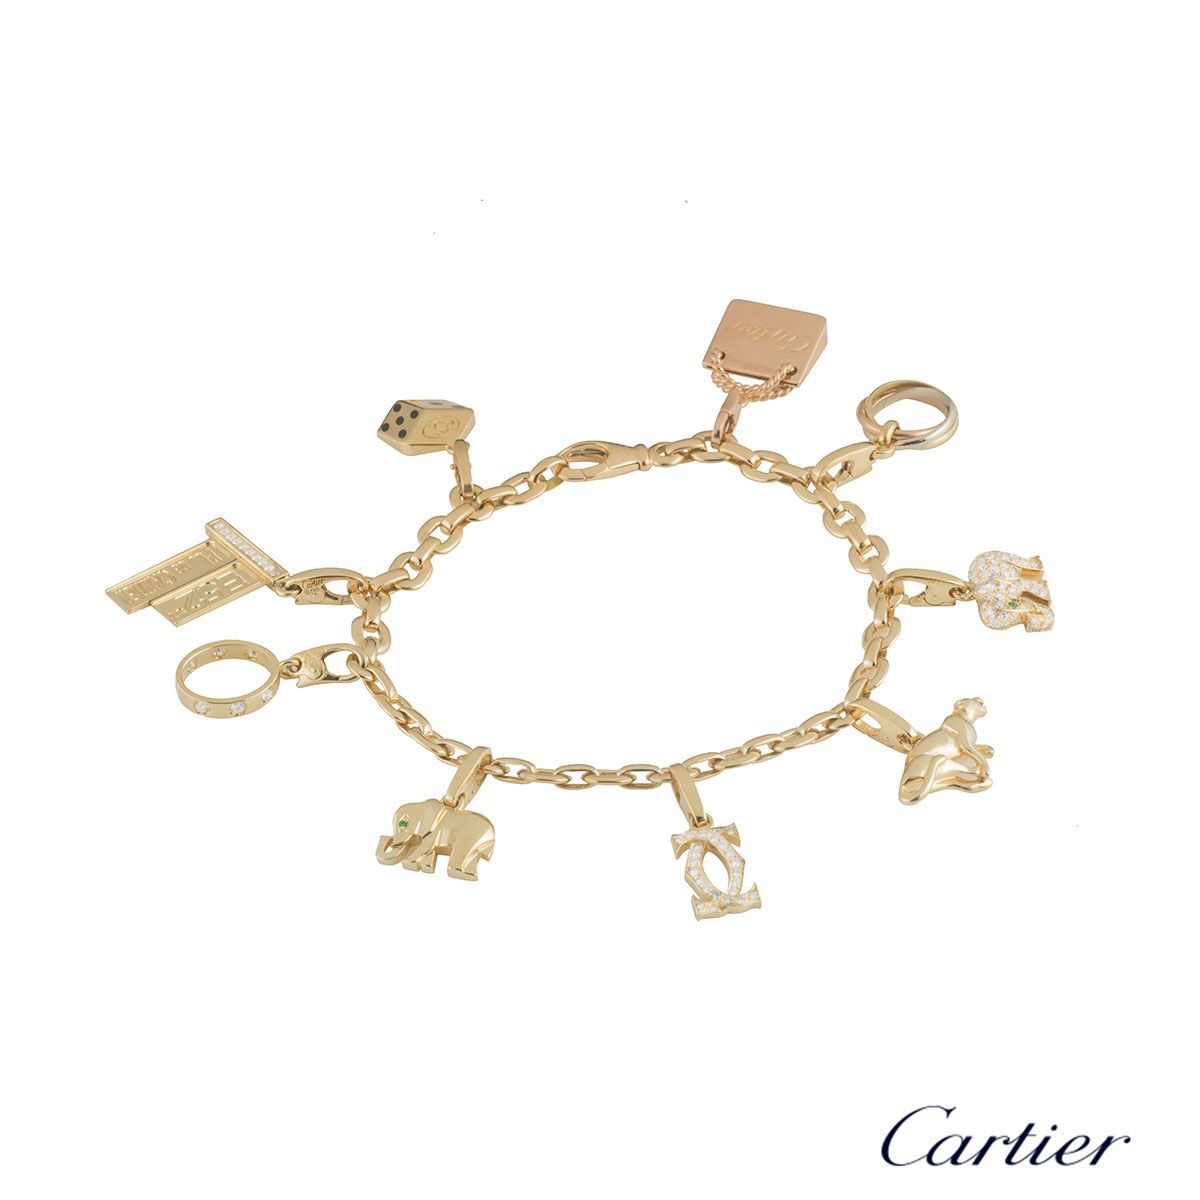 Cartier - CARTIER 18K YELLOW GOLD 7 CHARMS BRACELET